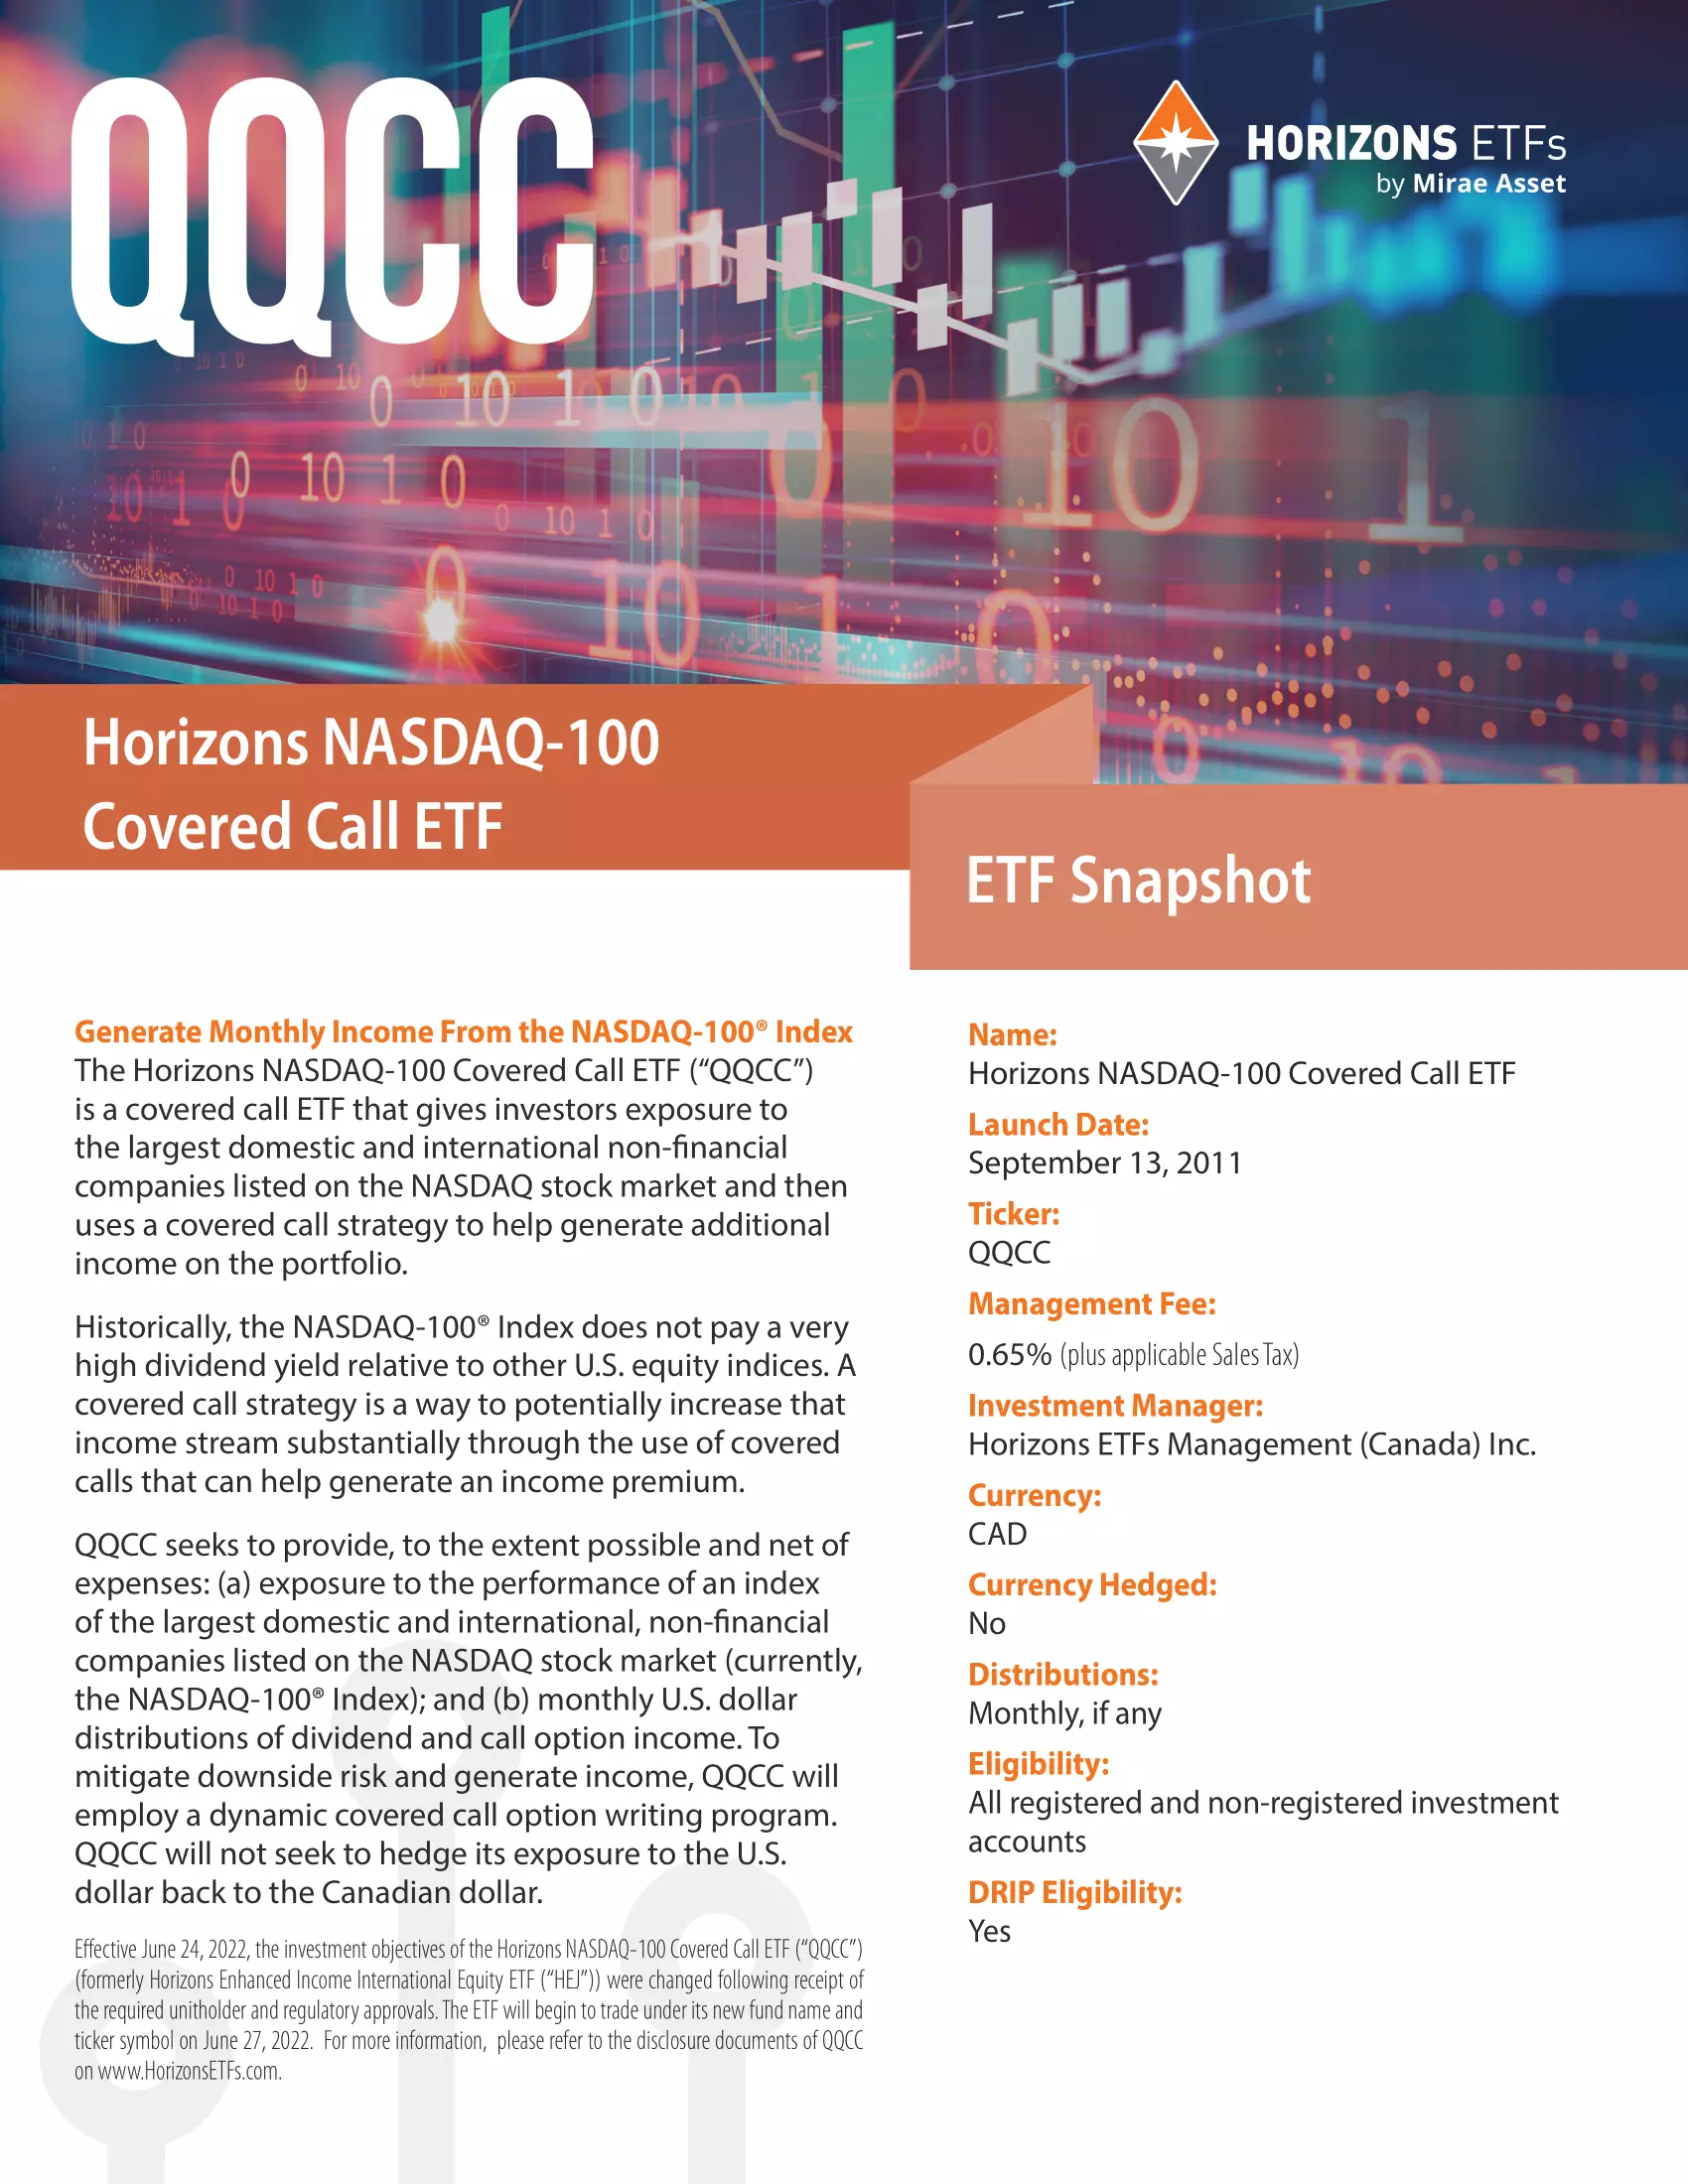 QQCC: Horizons NASDAQ-100 Covered Call ETF